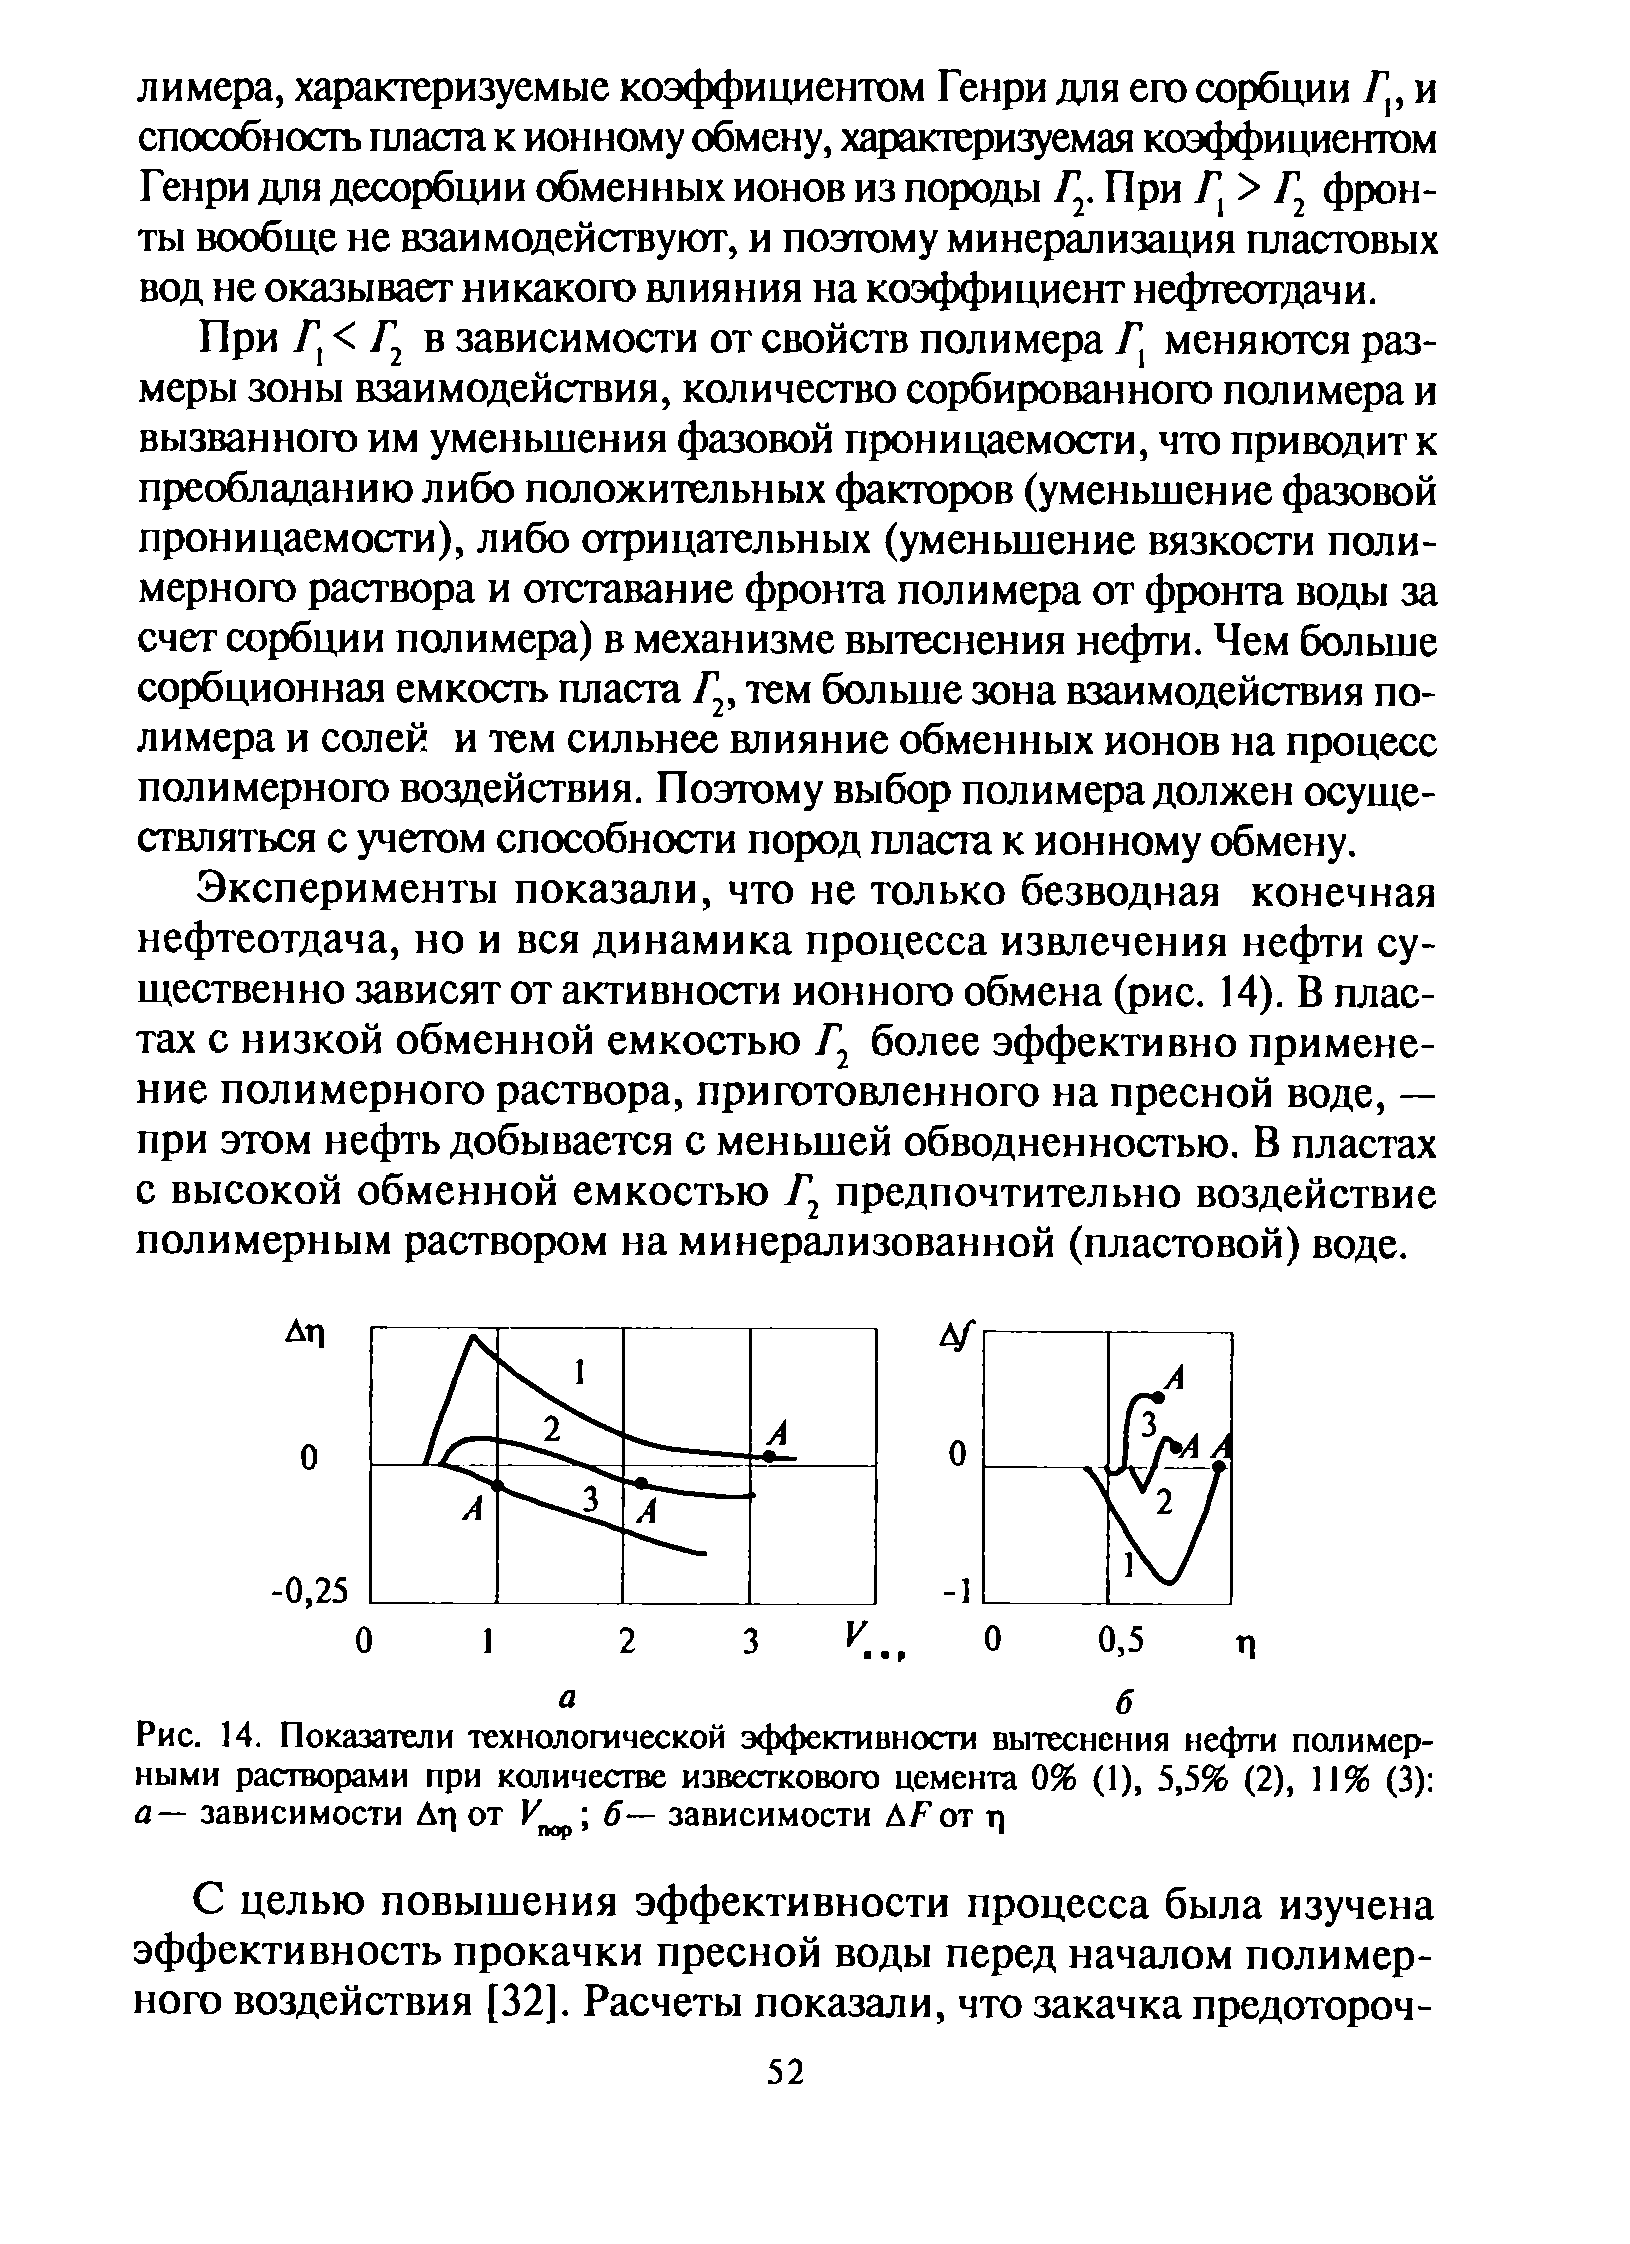 При Г Г в зависимости от свойств полимера Г, меняются размеры зоны взаимодействия, количество сорбированного полимера и вызванного им уменьшения фазовой проницаемости, что приюдитк преобладанию либо положительных факторов (уменьшение фазовой проницаемости), либо отрицательных (уменьшение вязкости полимерного раствора и отставание фронта полимера от фронта воды за счет сорбции полимера) в механизме вытеснения нефти. Чем больше сорбционная емкость пласта Г , тем больше зона взаимодействия полимера и солей и тем сильнее влияние обменных ионов на процесс полимерного воздействия. Поэтому выбор полимера должен осуществляться с учетом способности пород пласта к ионному обмену.